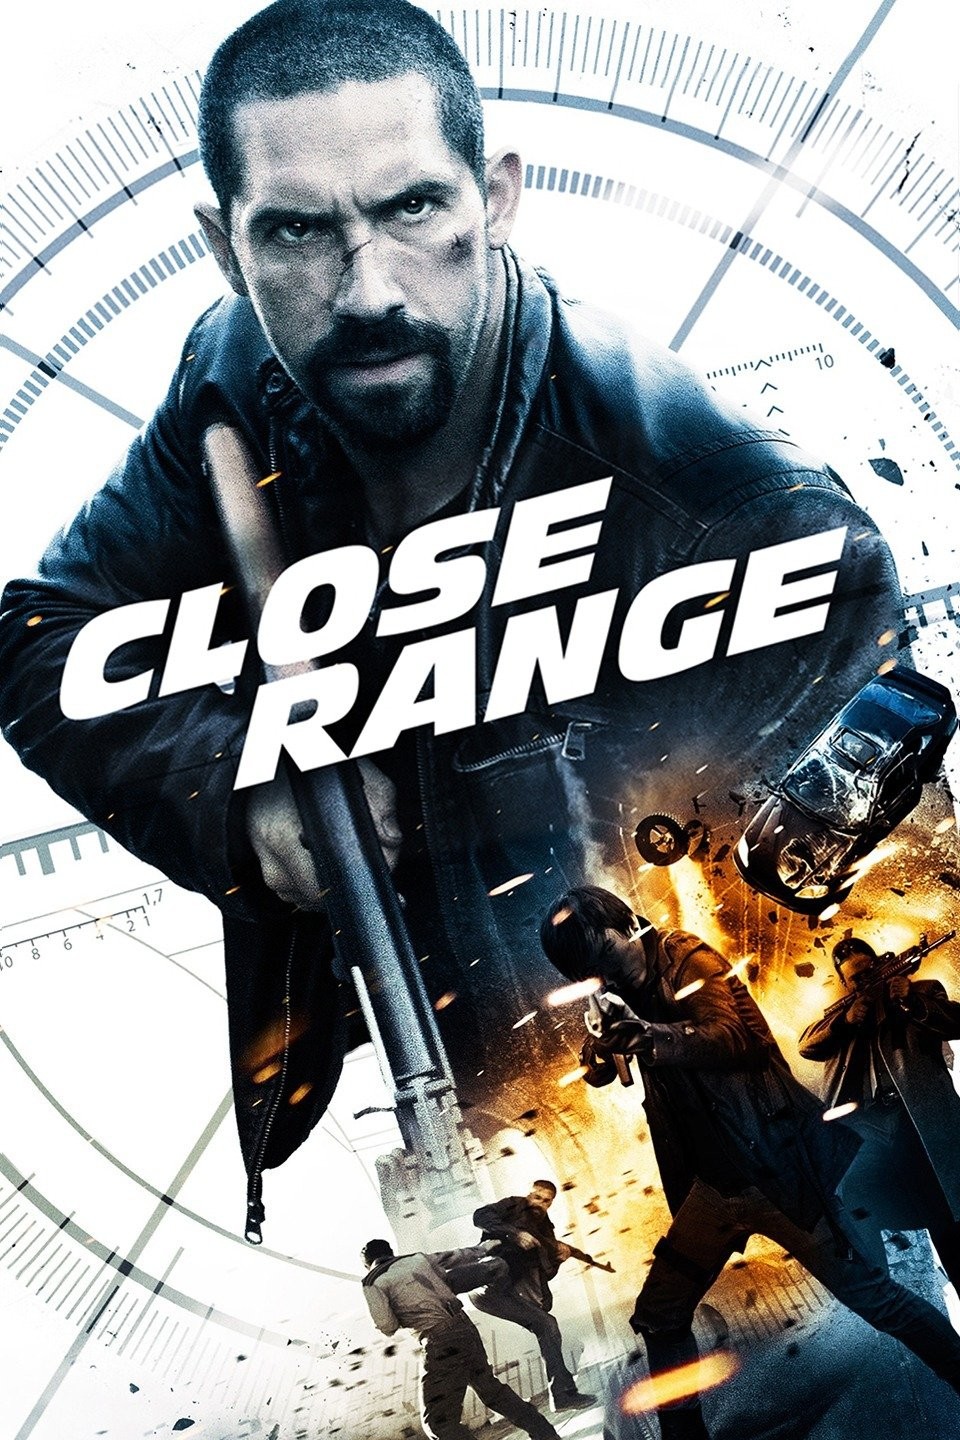 Reviews: At Close Range - IMDb